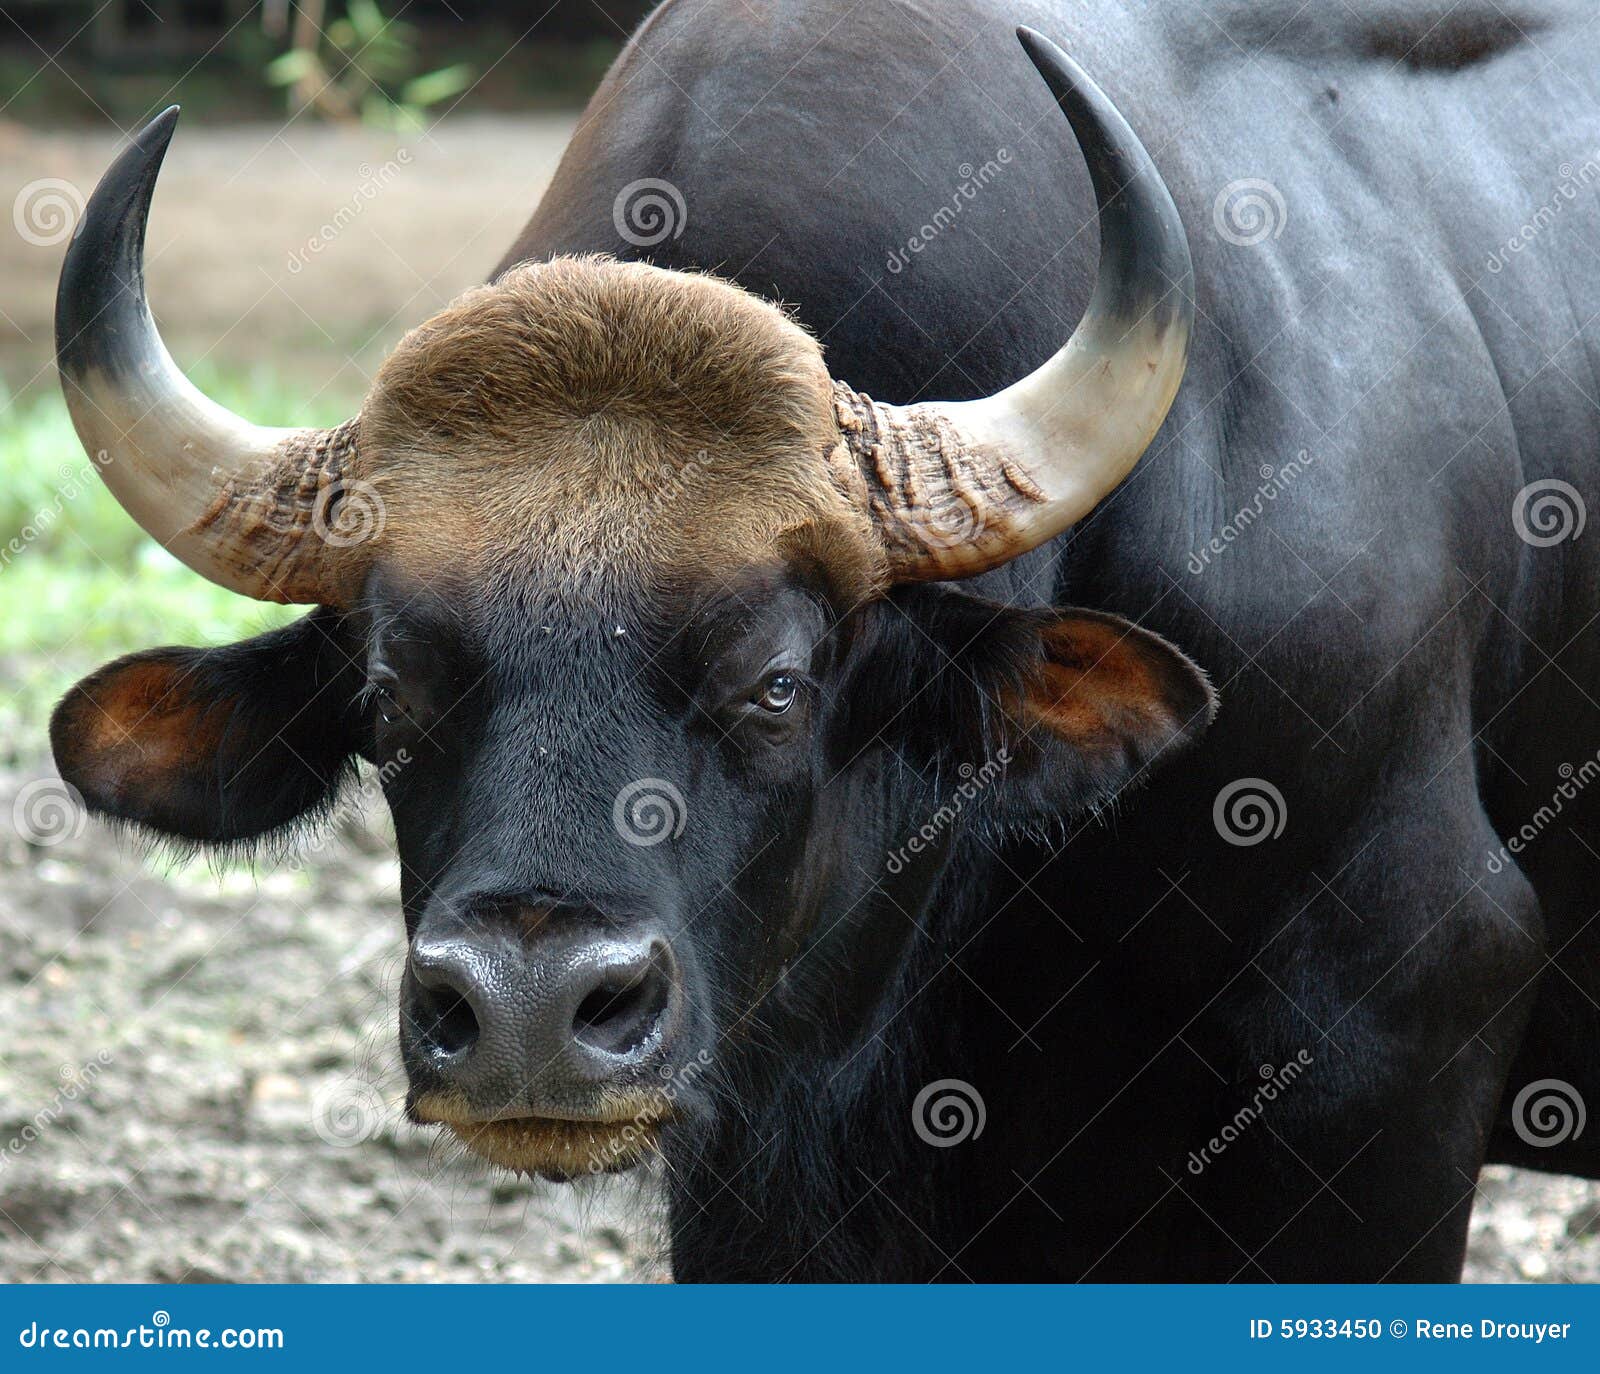 malaysia, penang: gaur